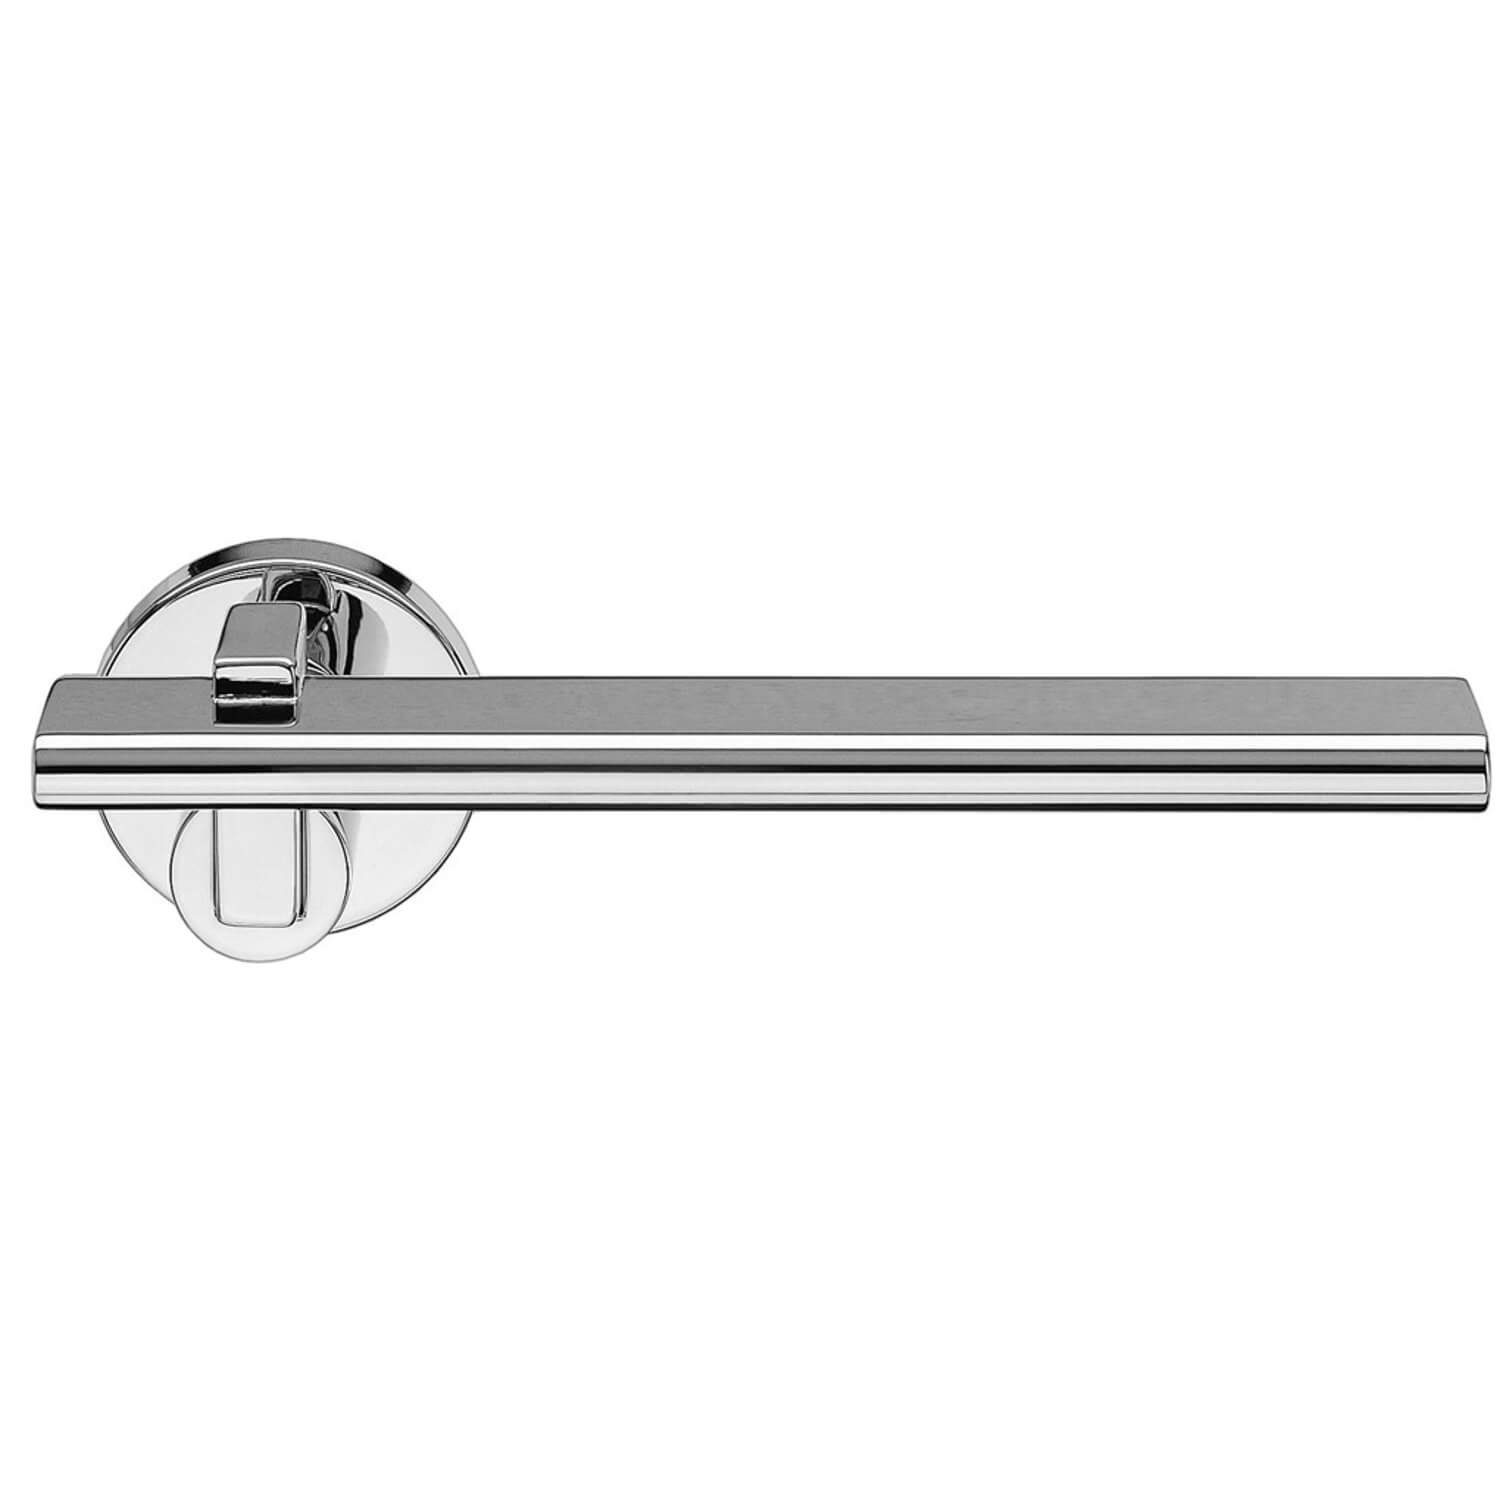 Design door handle H335, Chrome - Chrome and nickel door handles - VillaHus